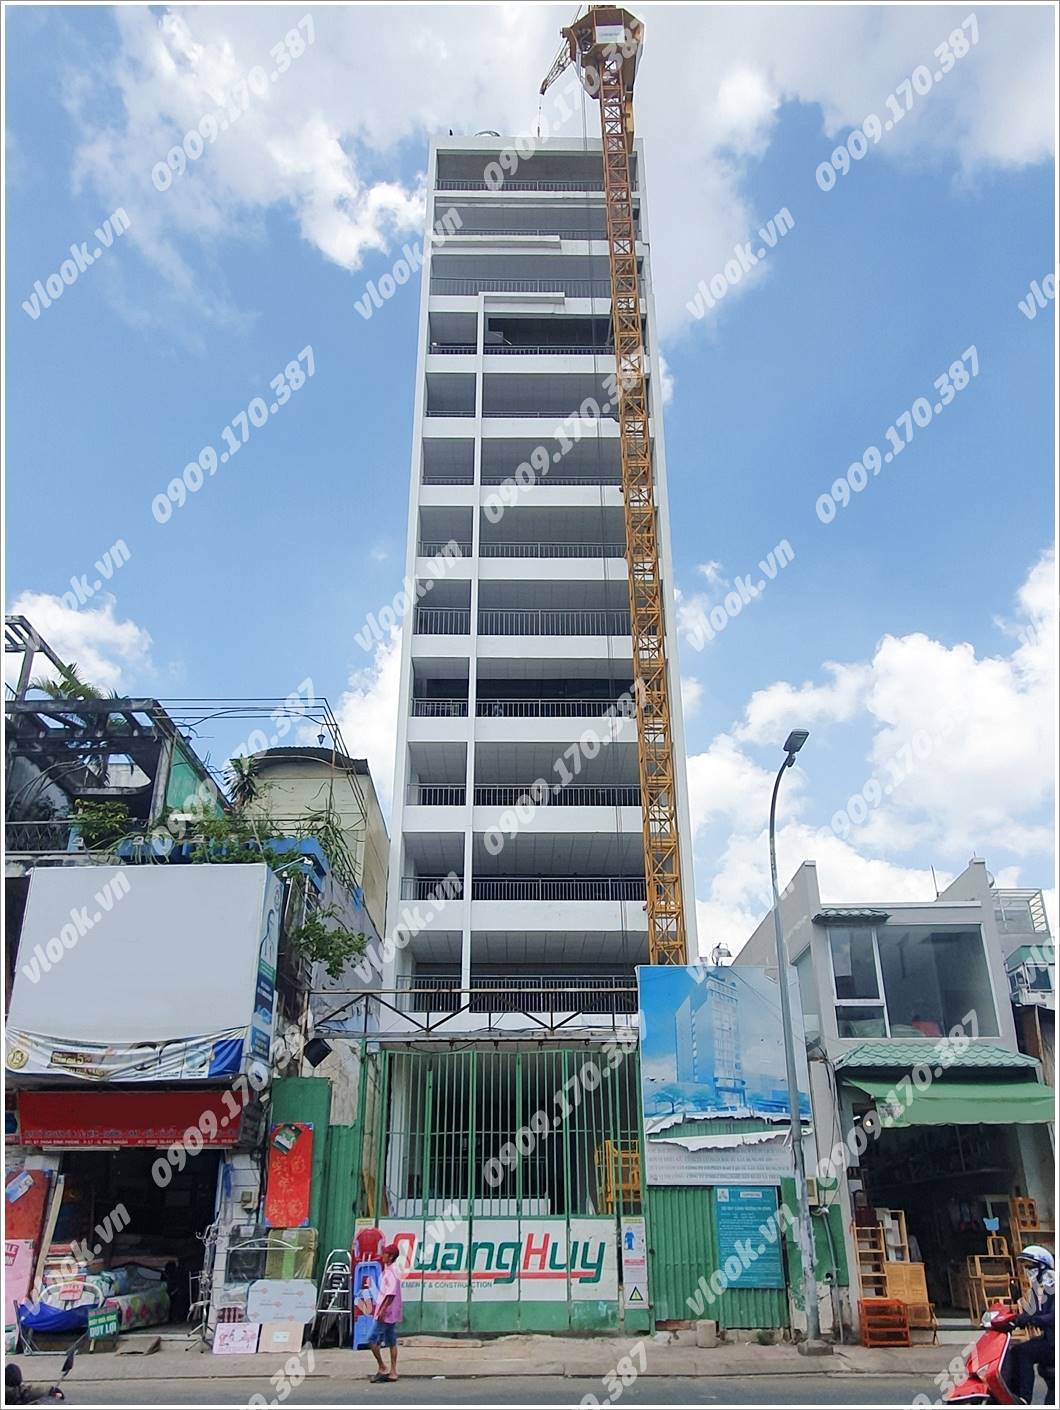 Cao ốc cho thuê Văn phòng Vital Building, Phan Đình Phùng, Quận Phú Nhuận - vlook.vn